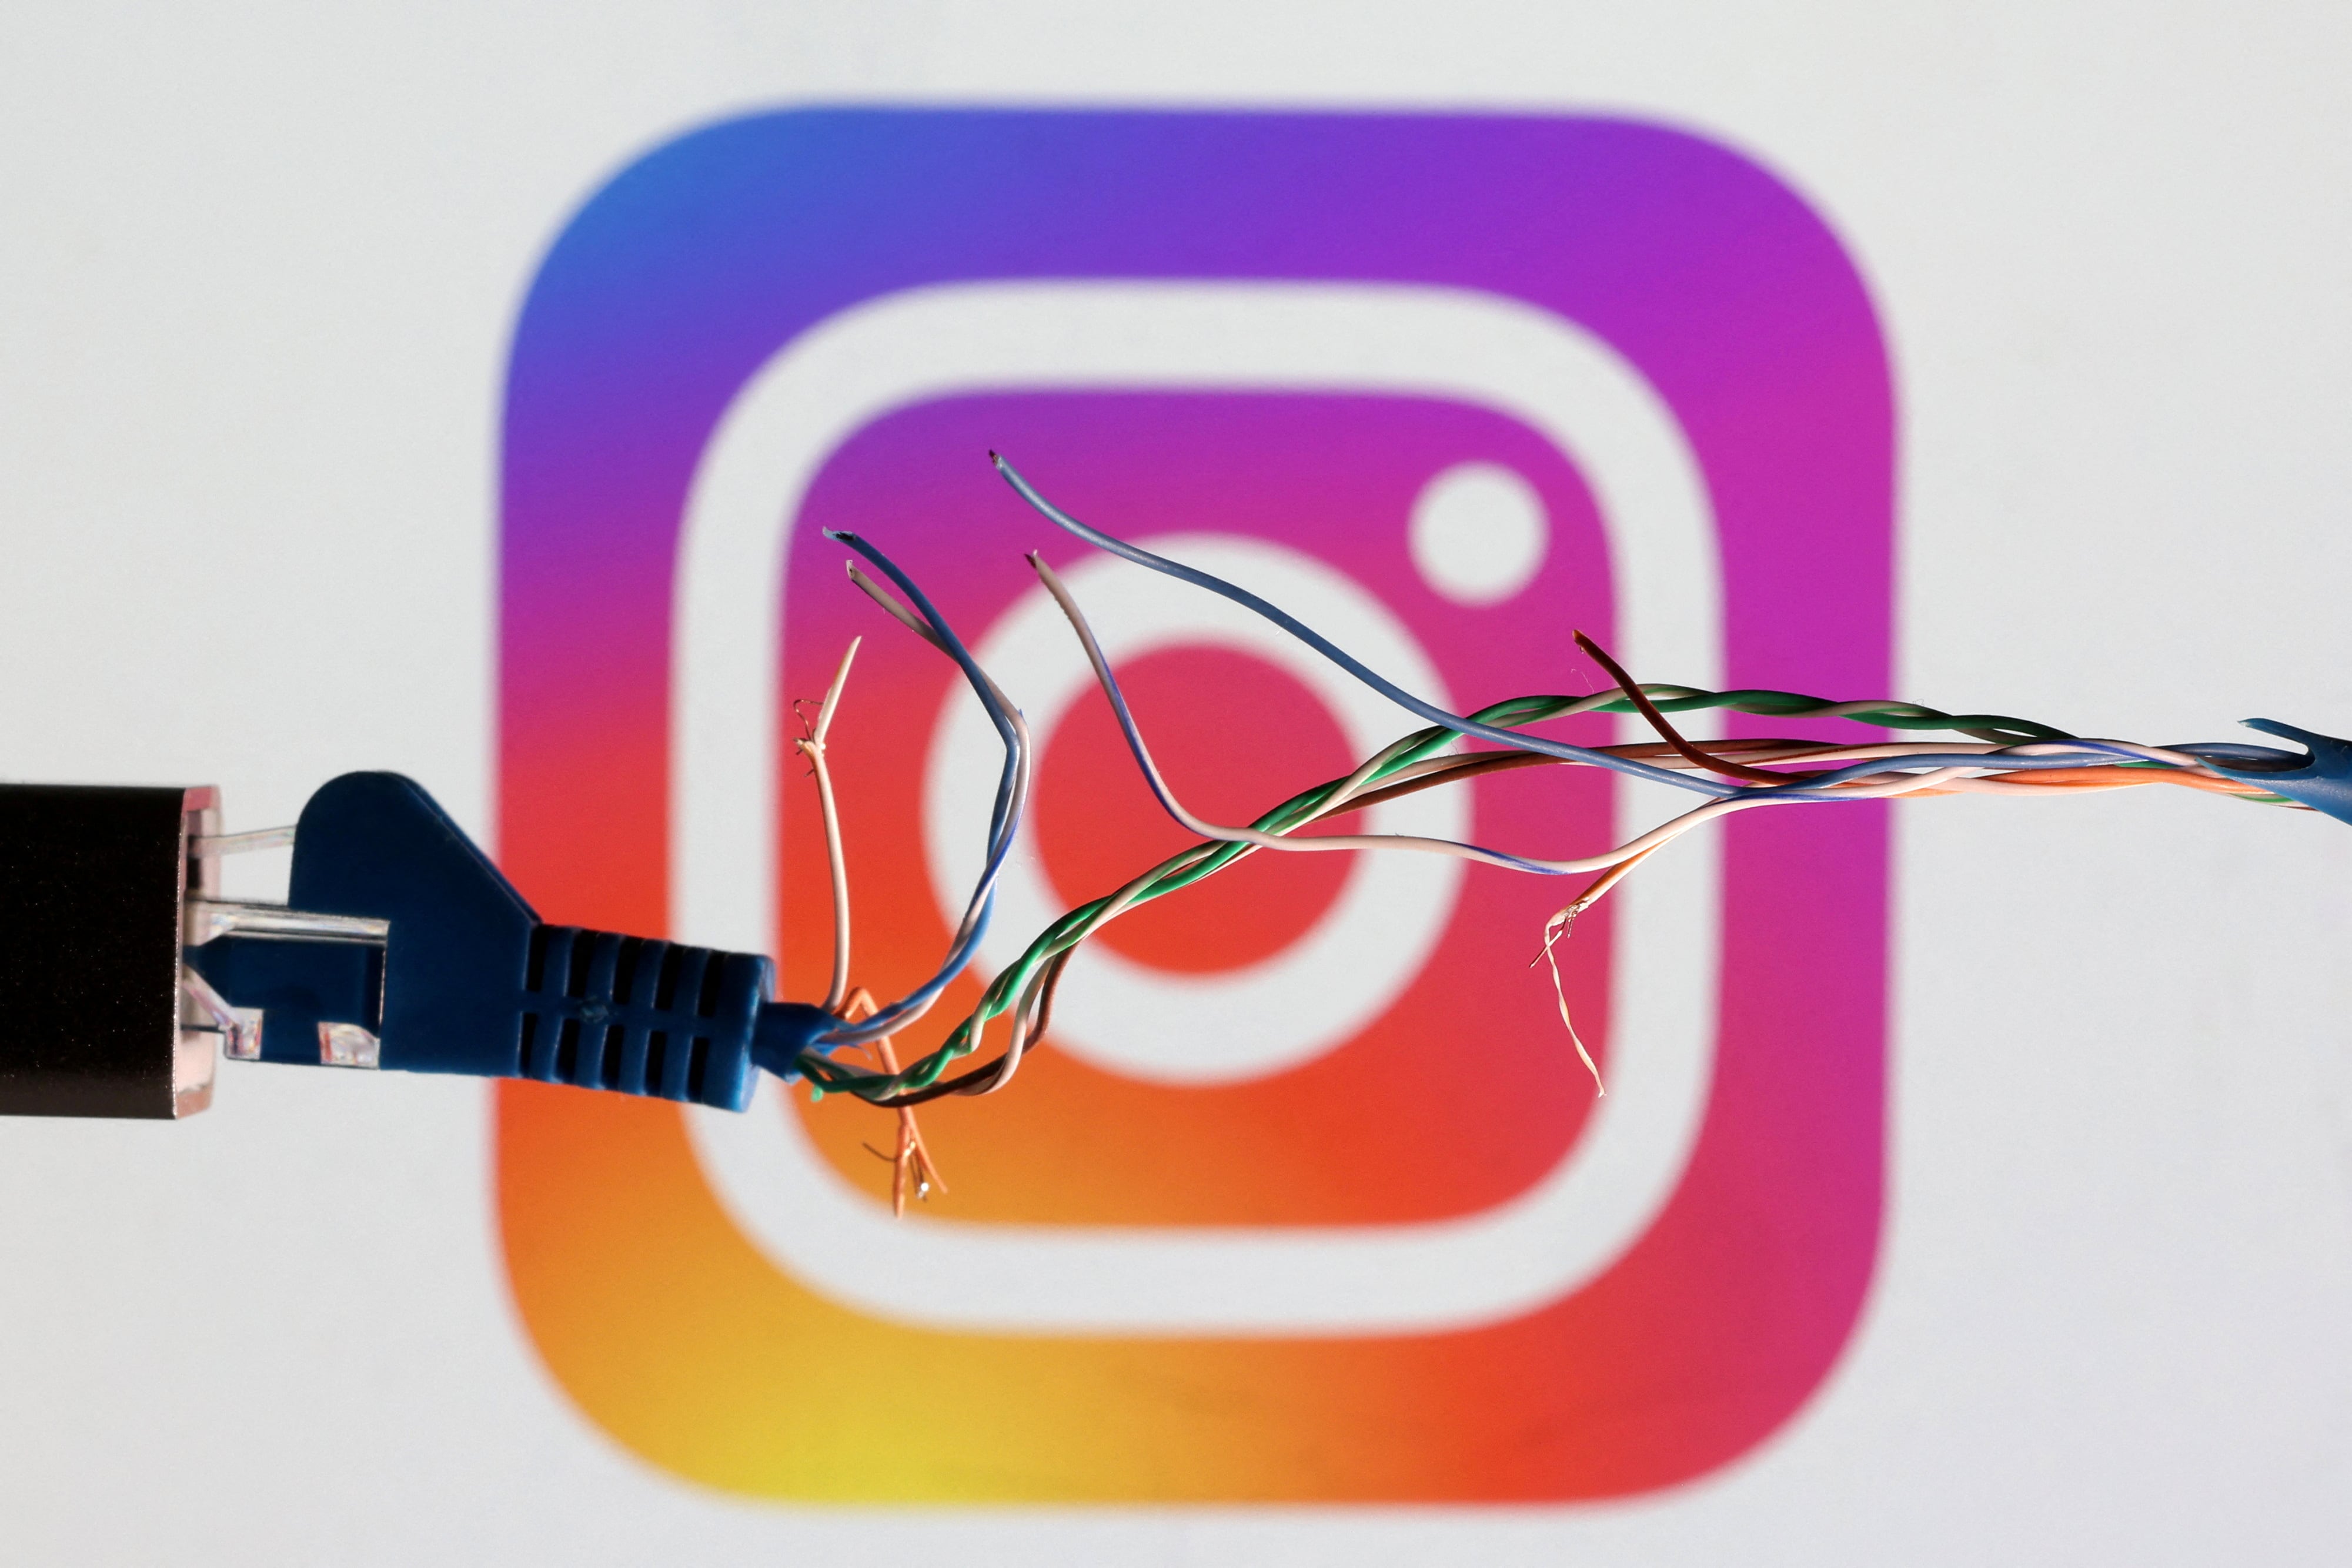 Instagram no notifica cuando se agrega a alguien a mejores amigos ni cuando se bloquea. REUTERS/Dado Ruvic/Illustration/File Photo